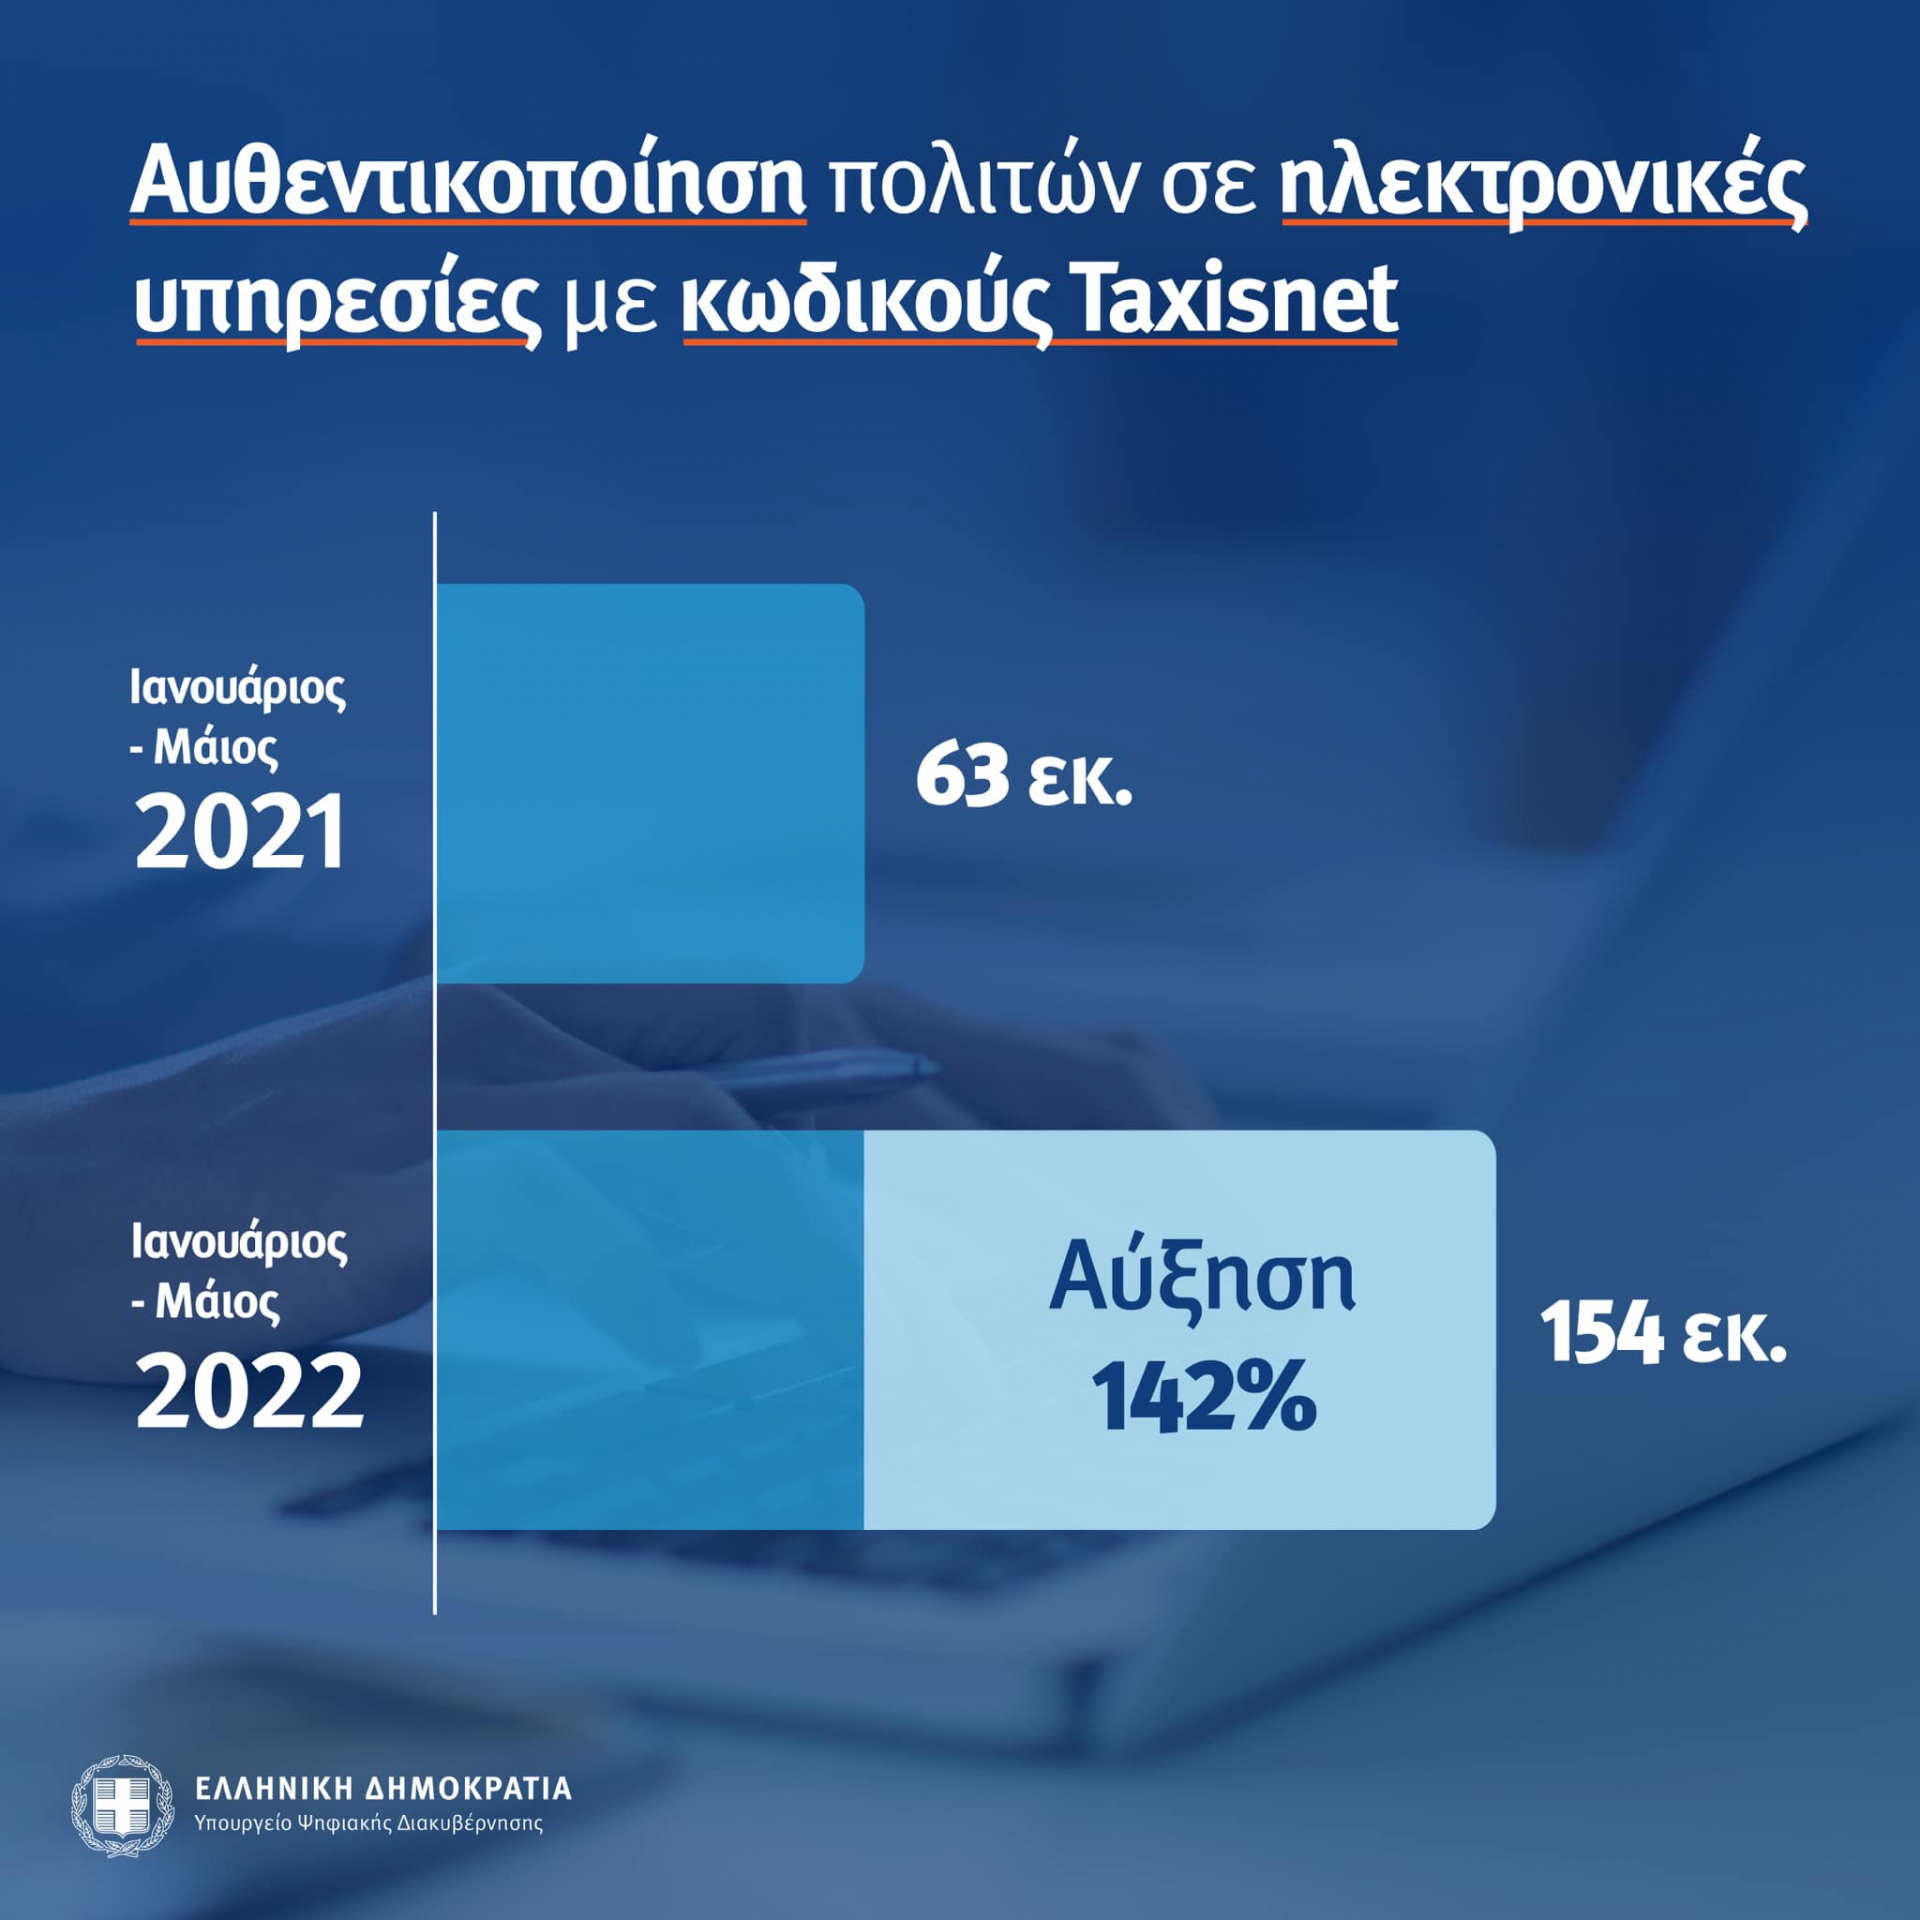 Κατά 142% αυξήθηκε η πρόσβαση των  πολιτών σε ηλεκτρονικές υπηρεσίες με κωδικούς Taxisnet κατά το πρώτο πεντάμηνο του 2022